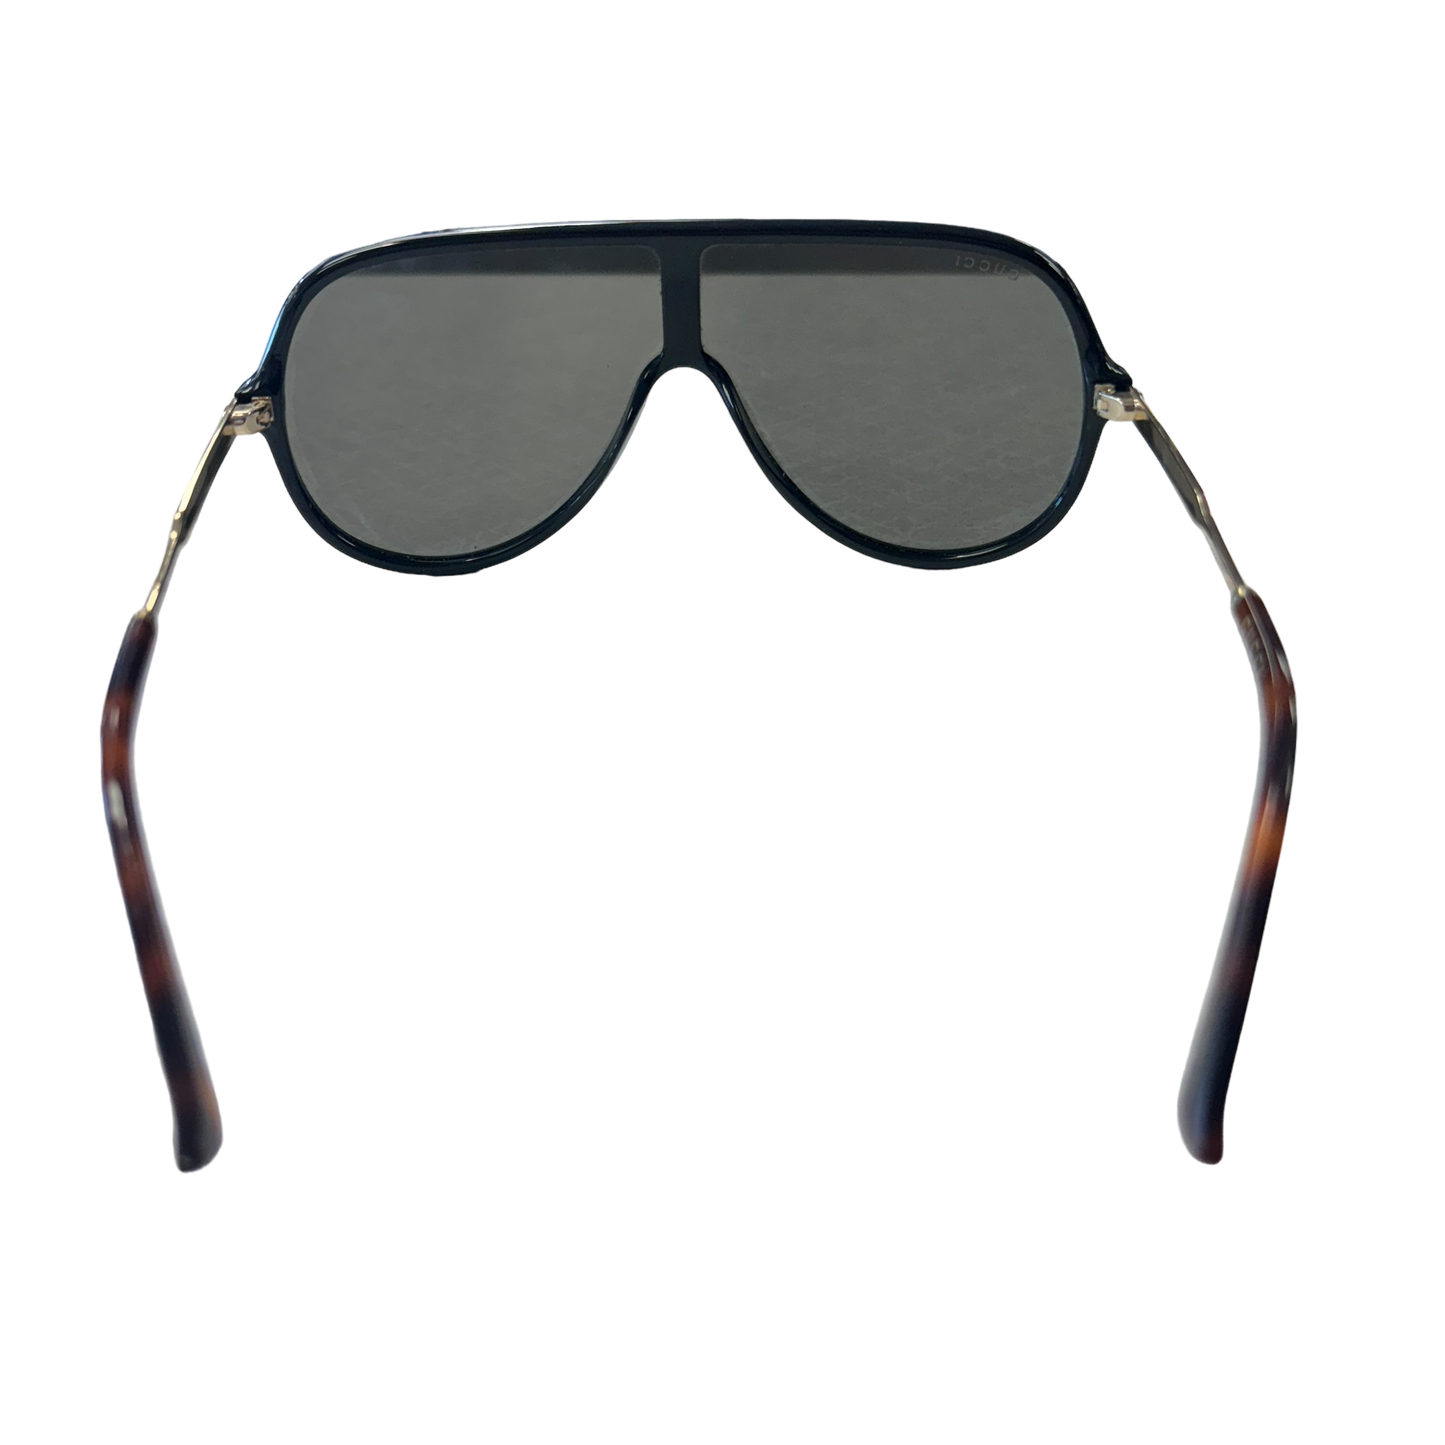 Sunglasses Designer Gucci